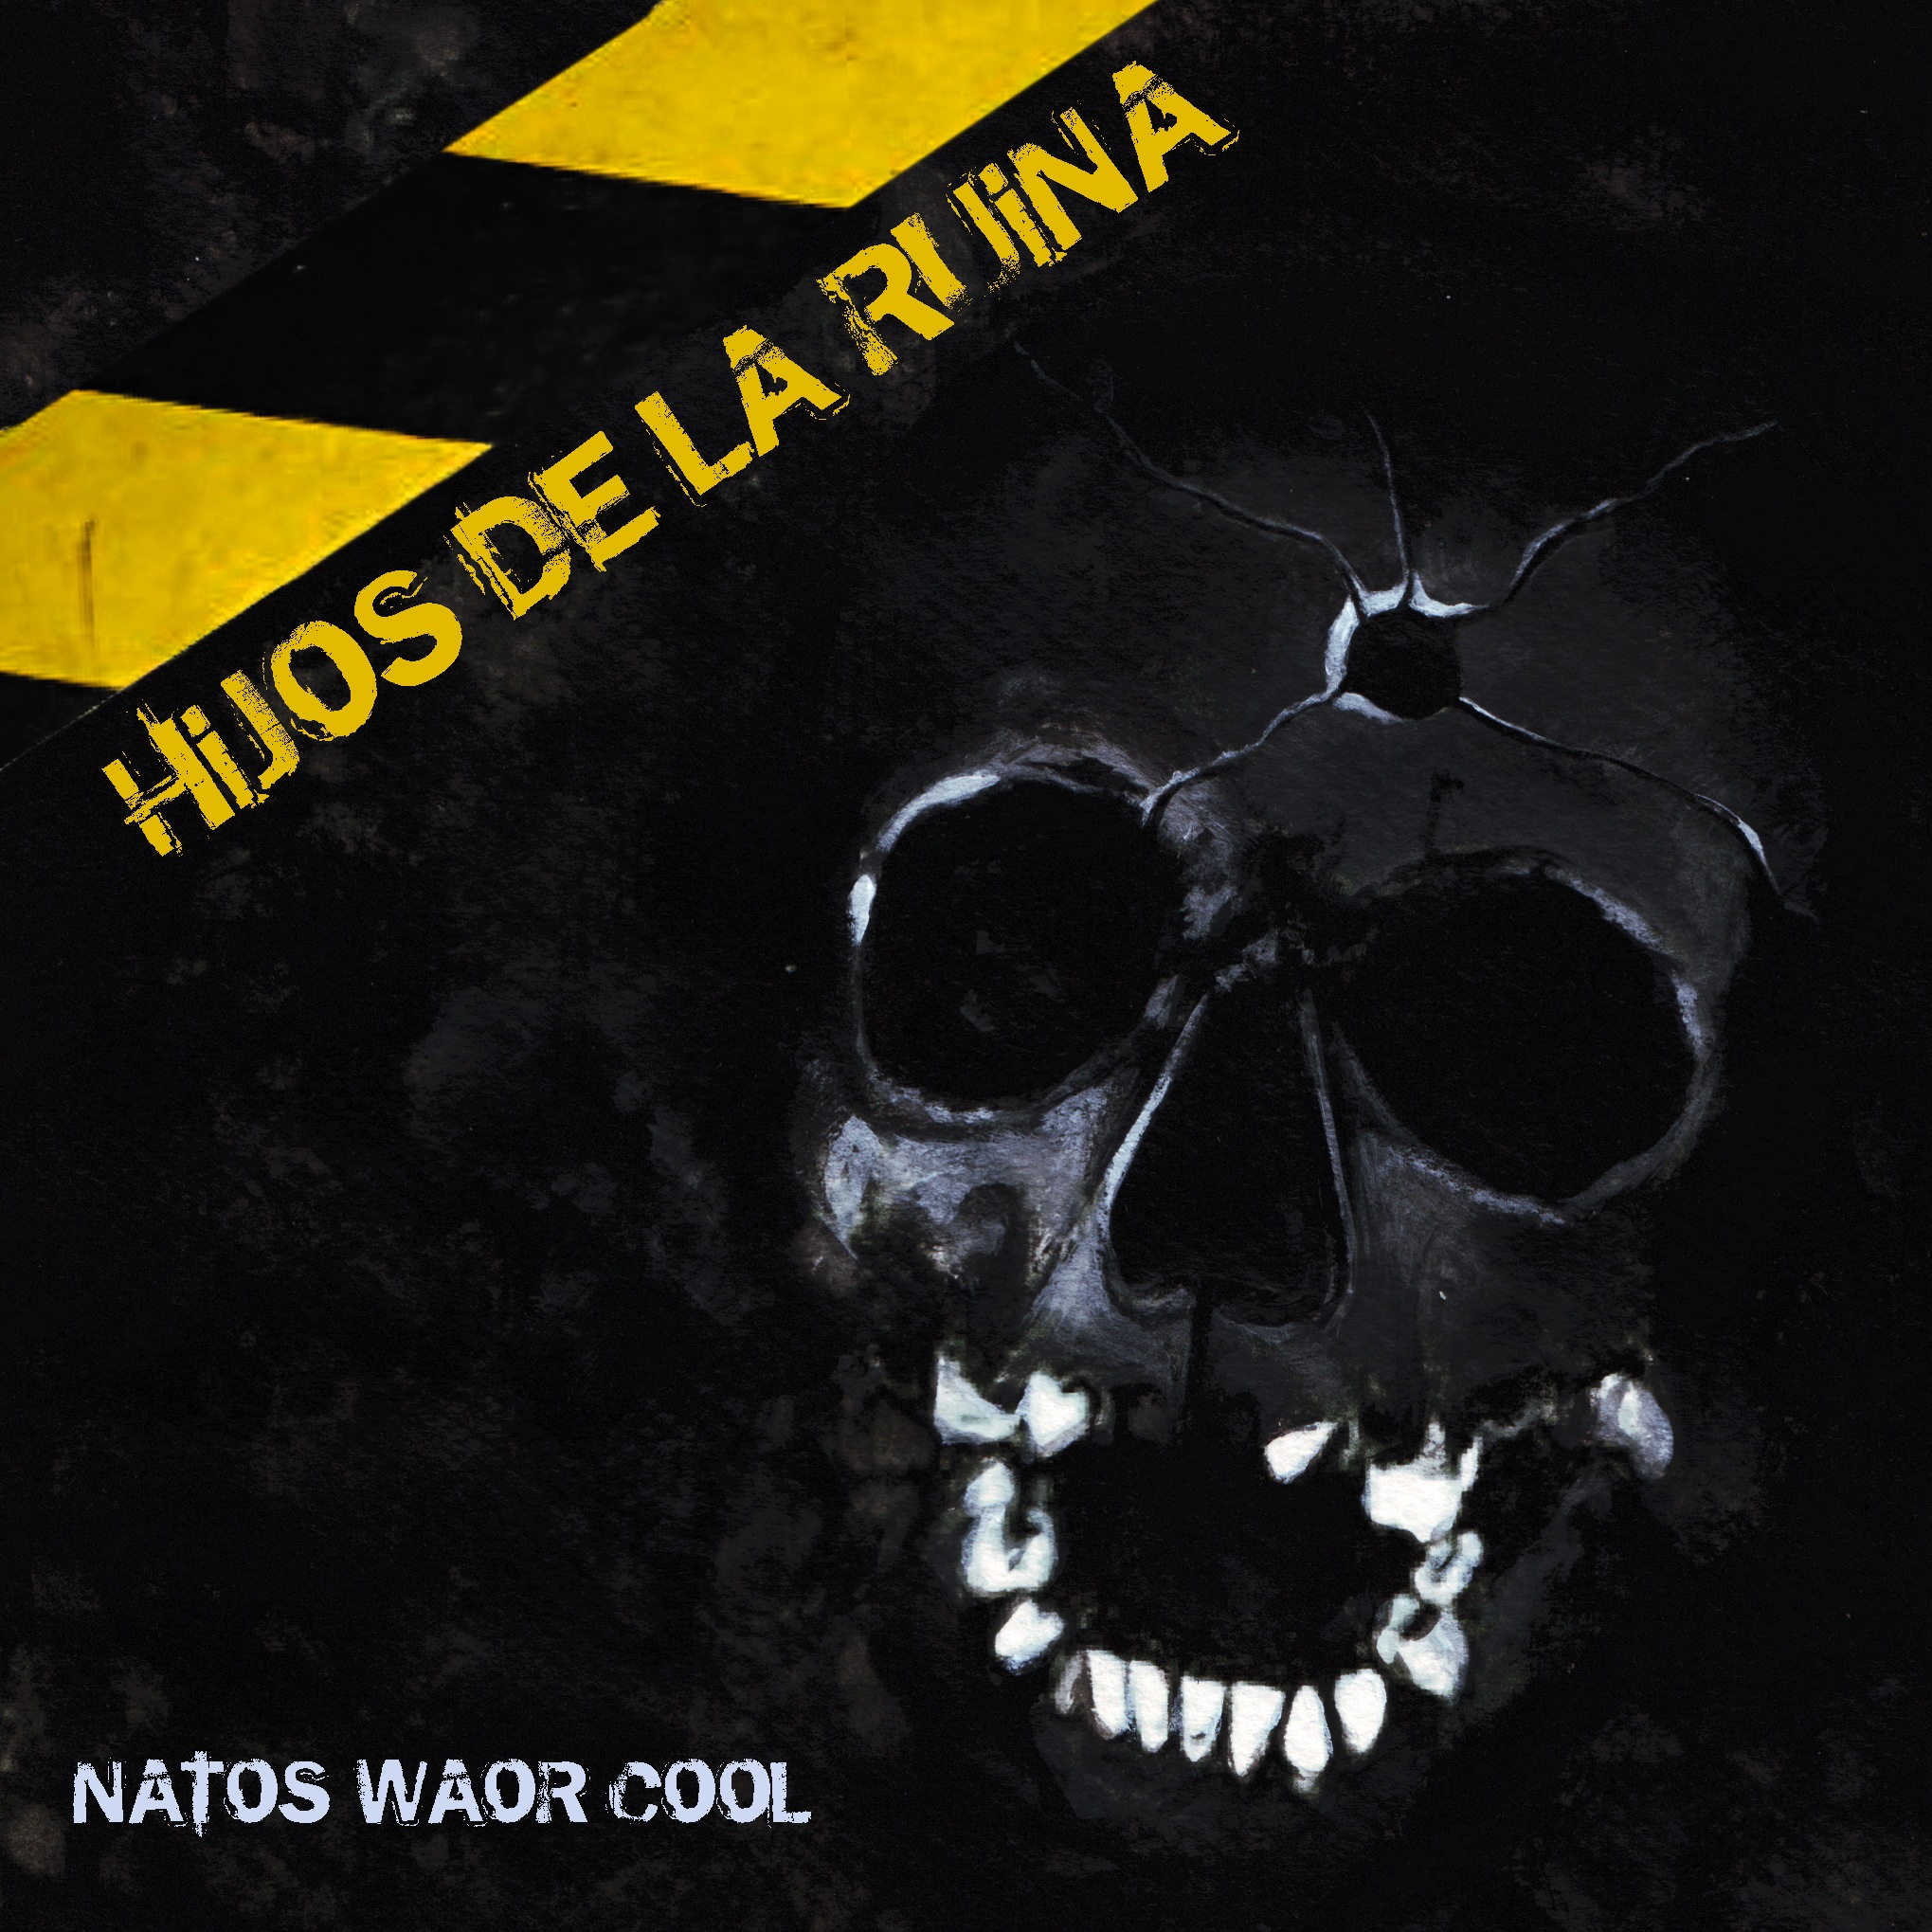 Natos-waor-cool-hijos-de-la-ruina-portada